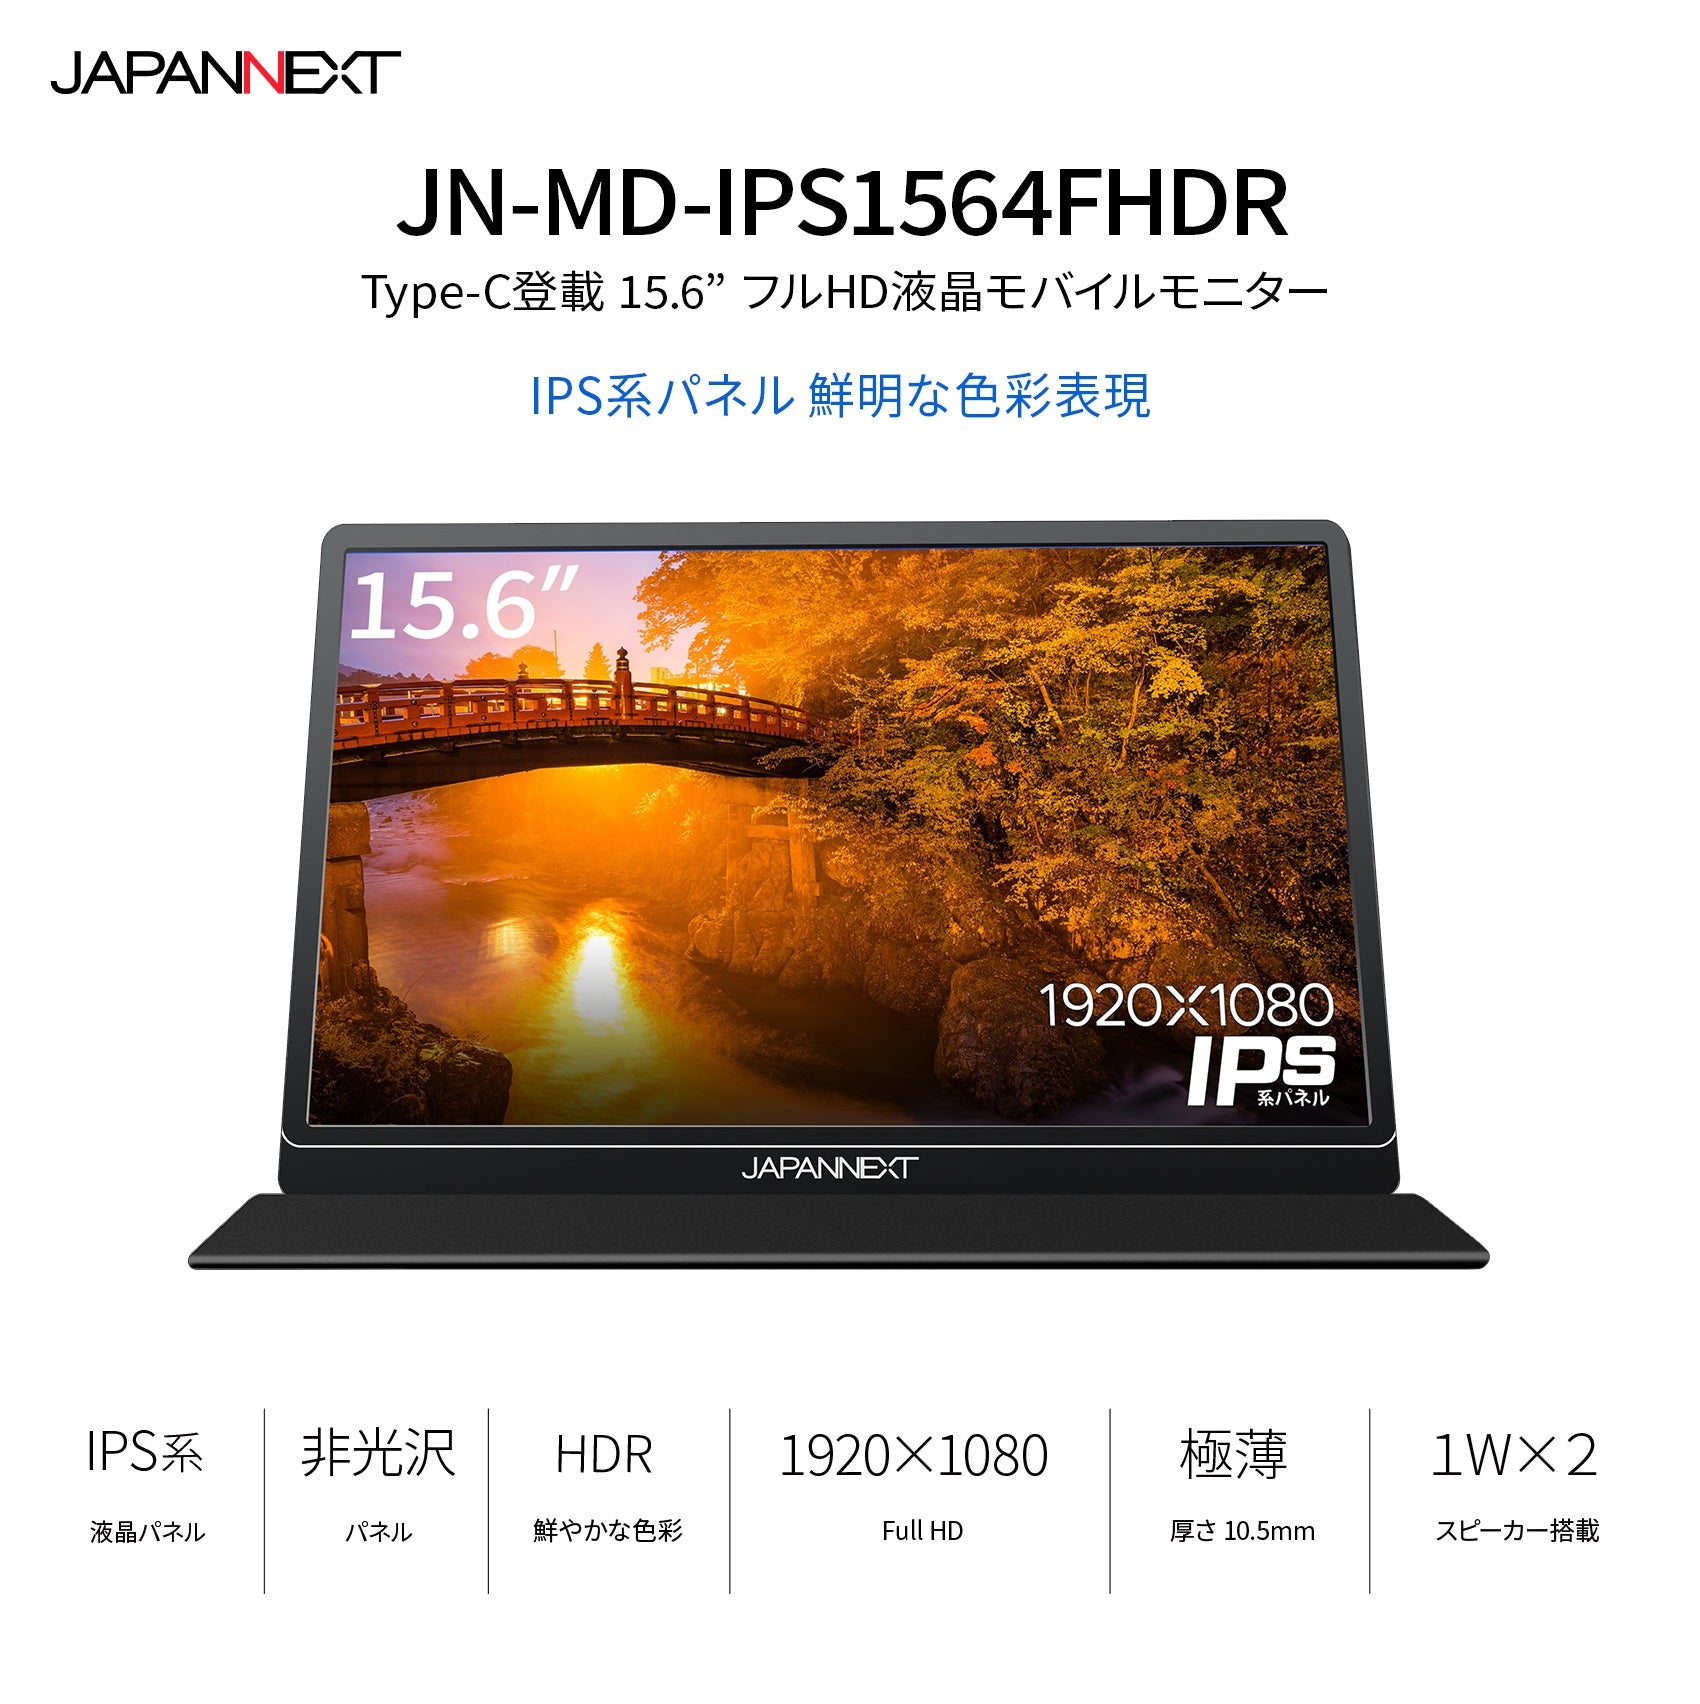 JAPANNEXT JN-MD-IPS1564FHDR 15.6型 フルHD(1920 x 1080) モバイル